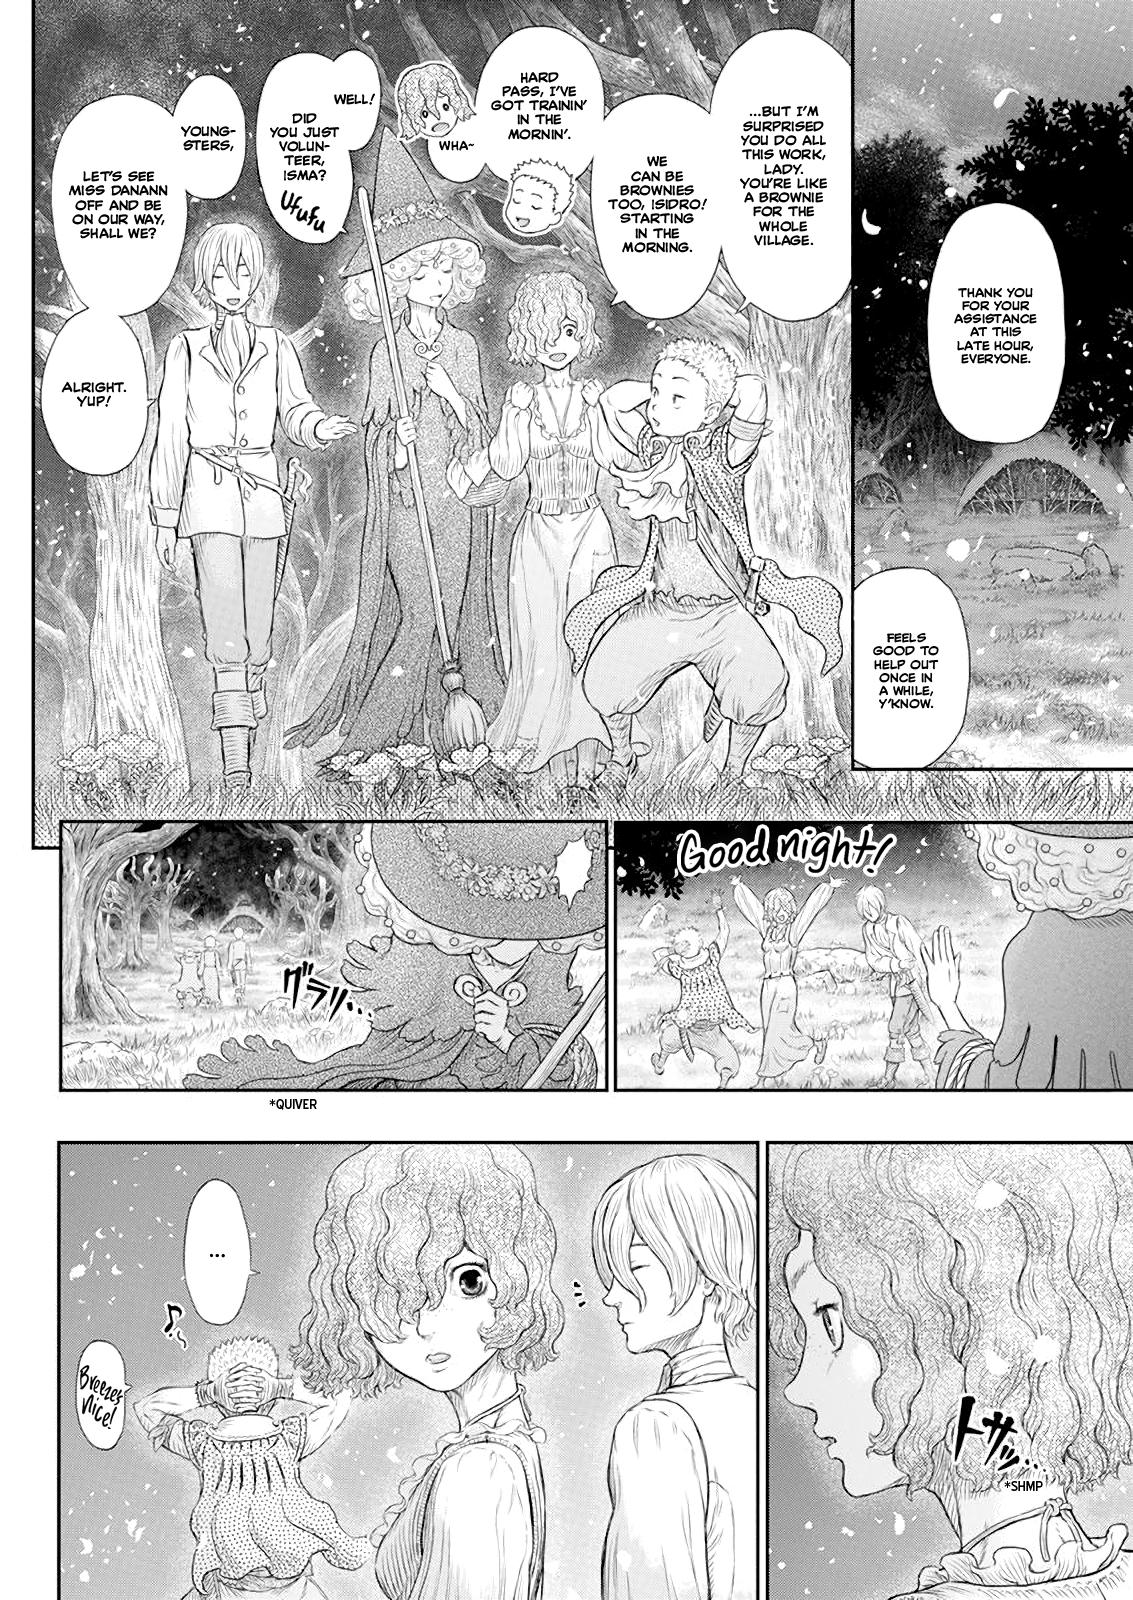 Berserk Manga Chapter 367 image 04